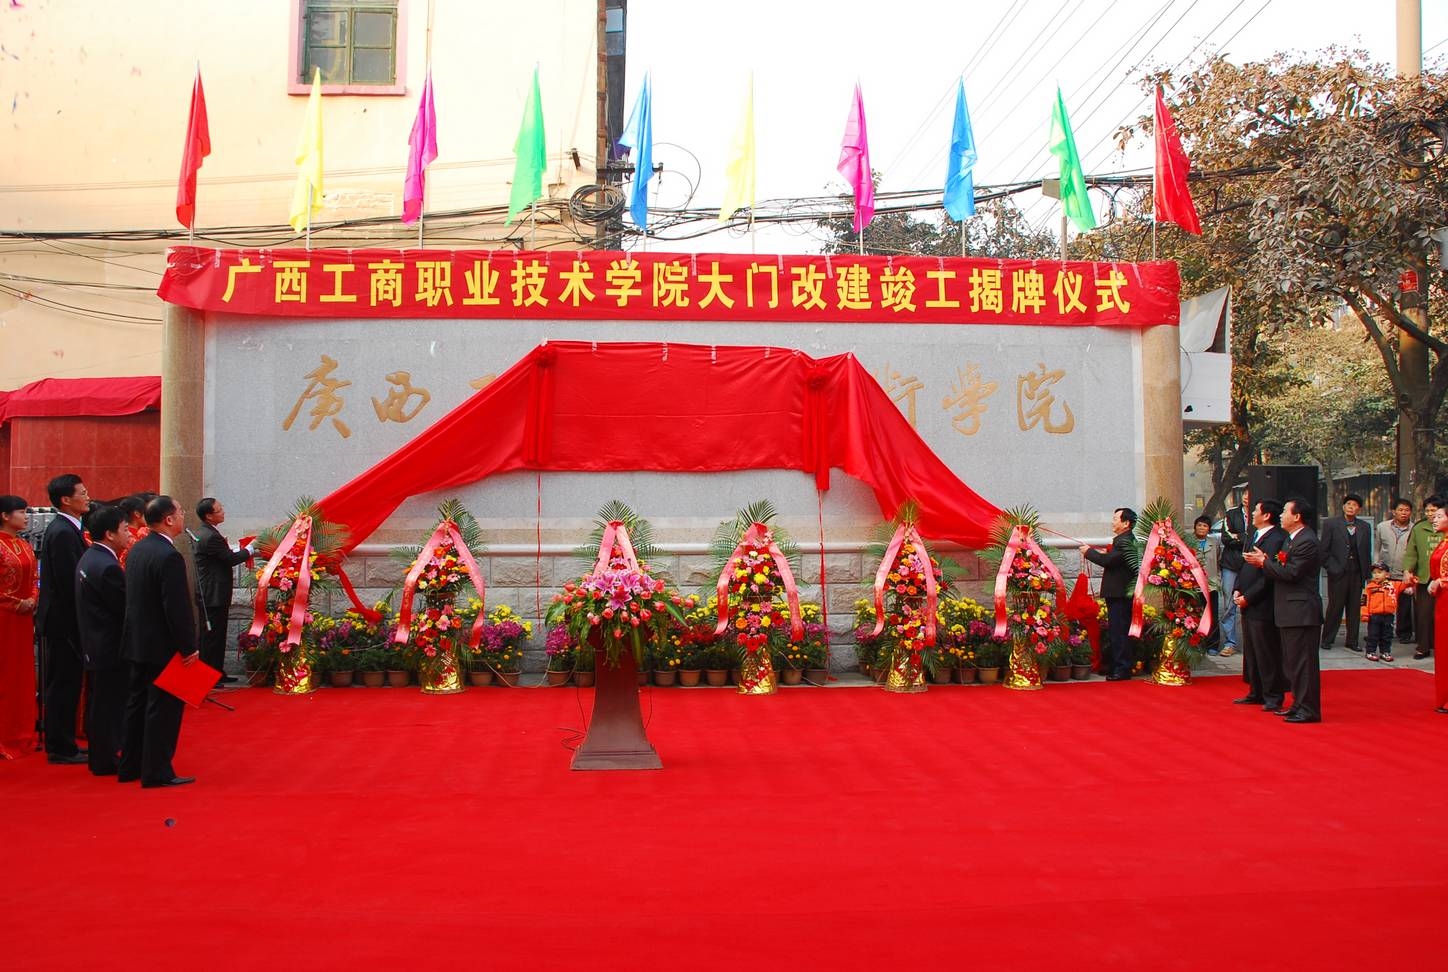 2008年中尧校区校门挂牌仪式